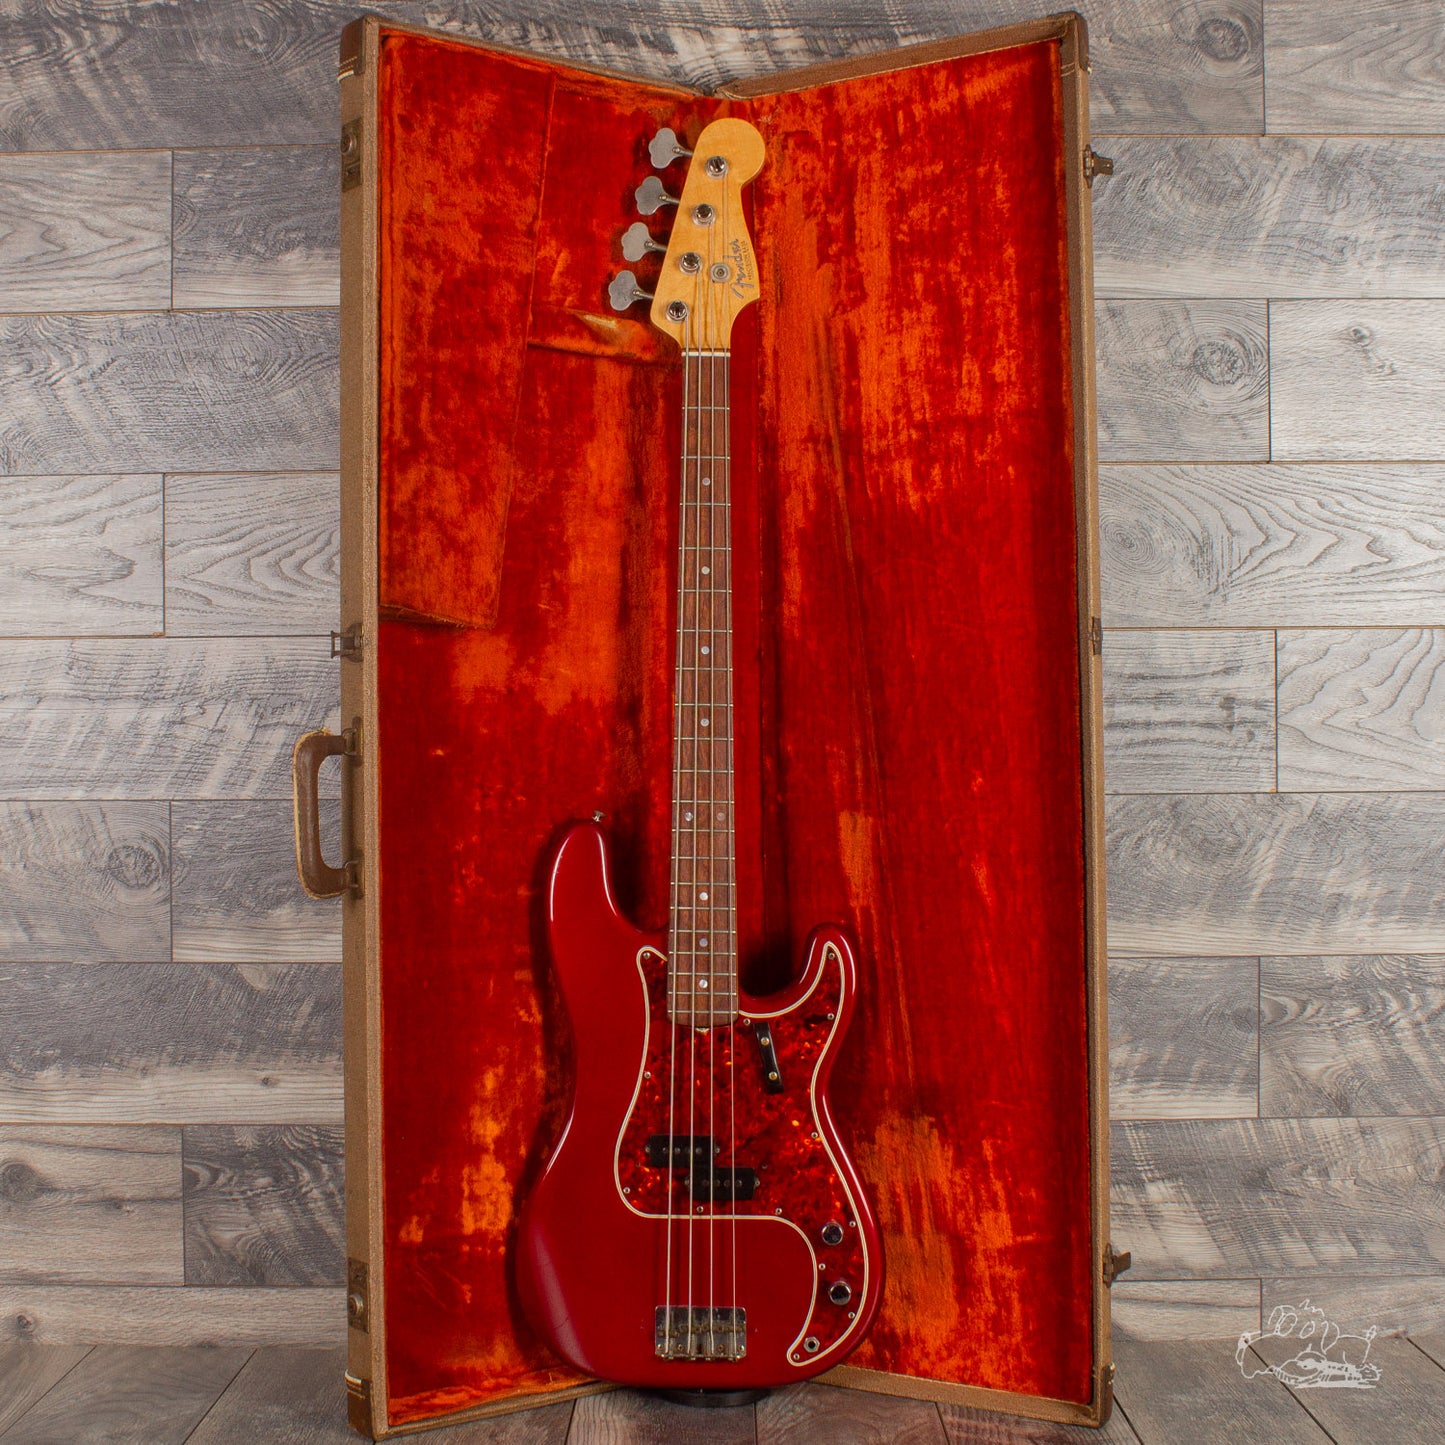 1963 Fender Precision Bass